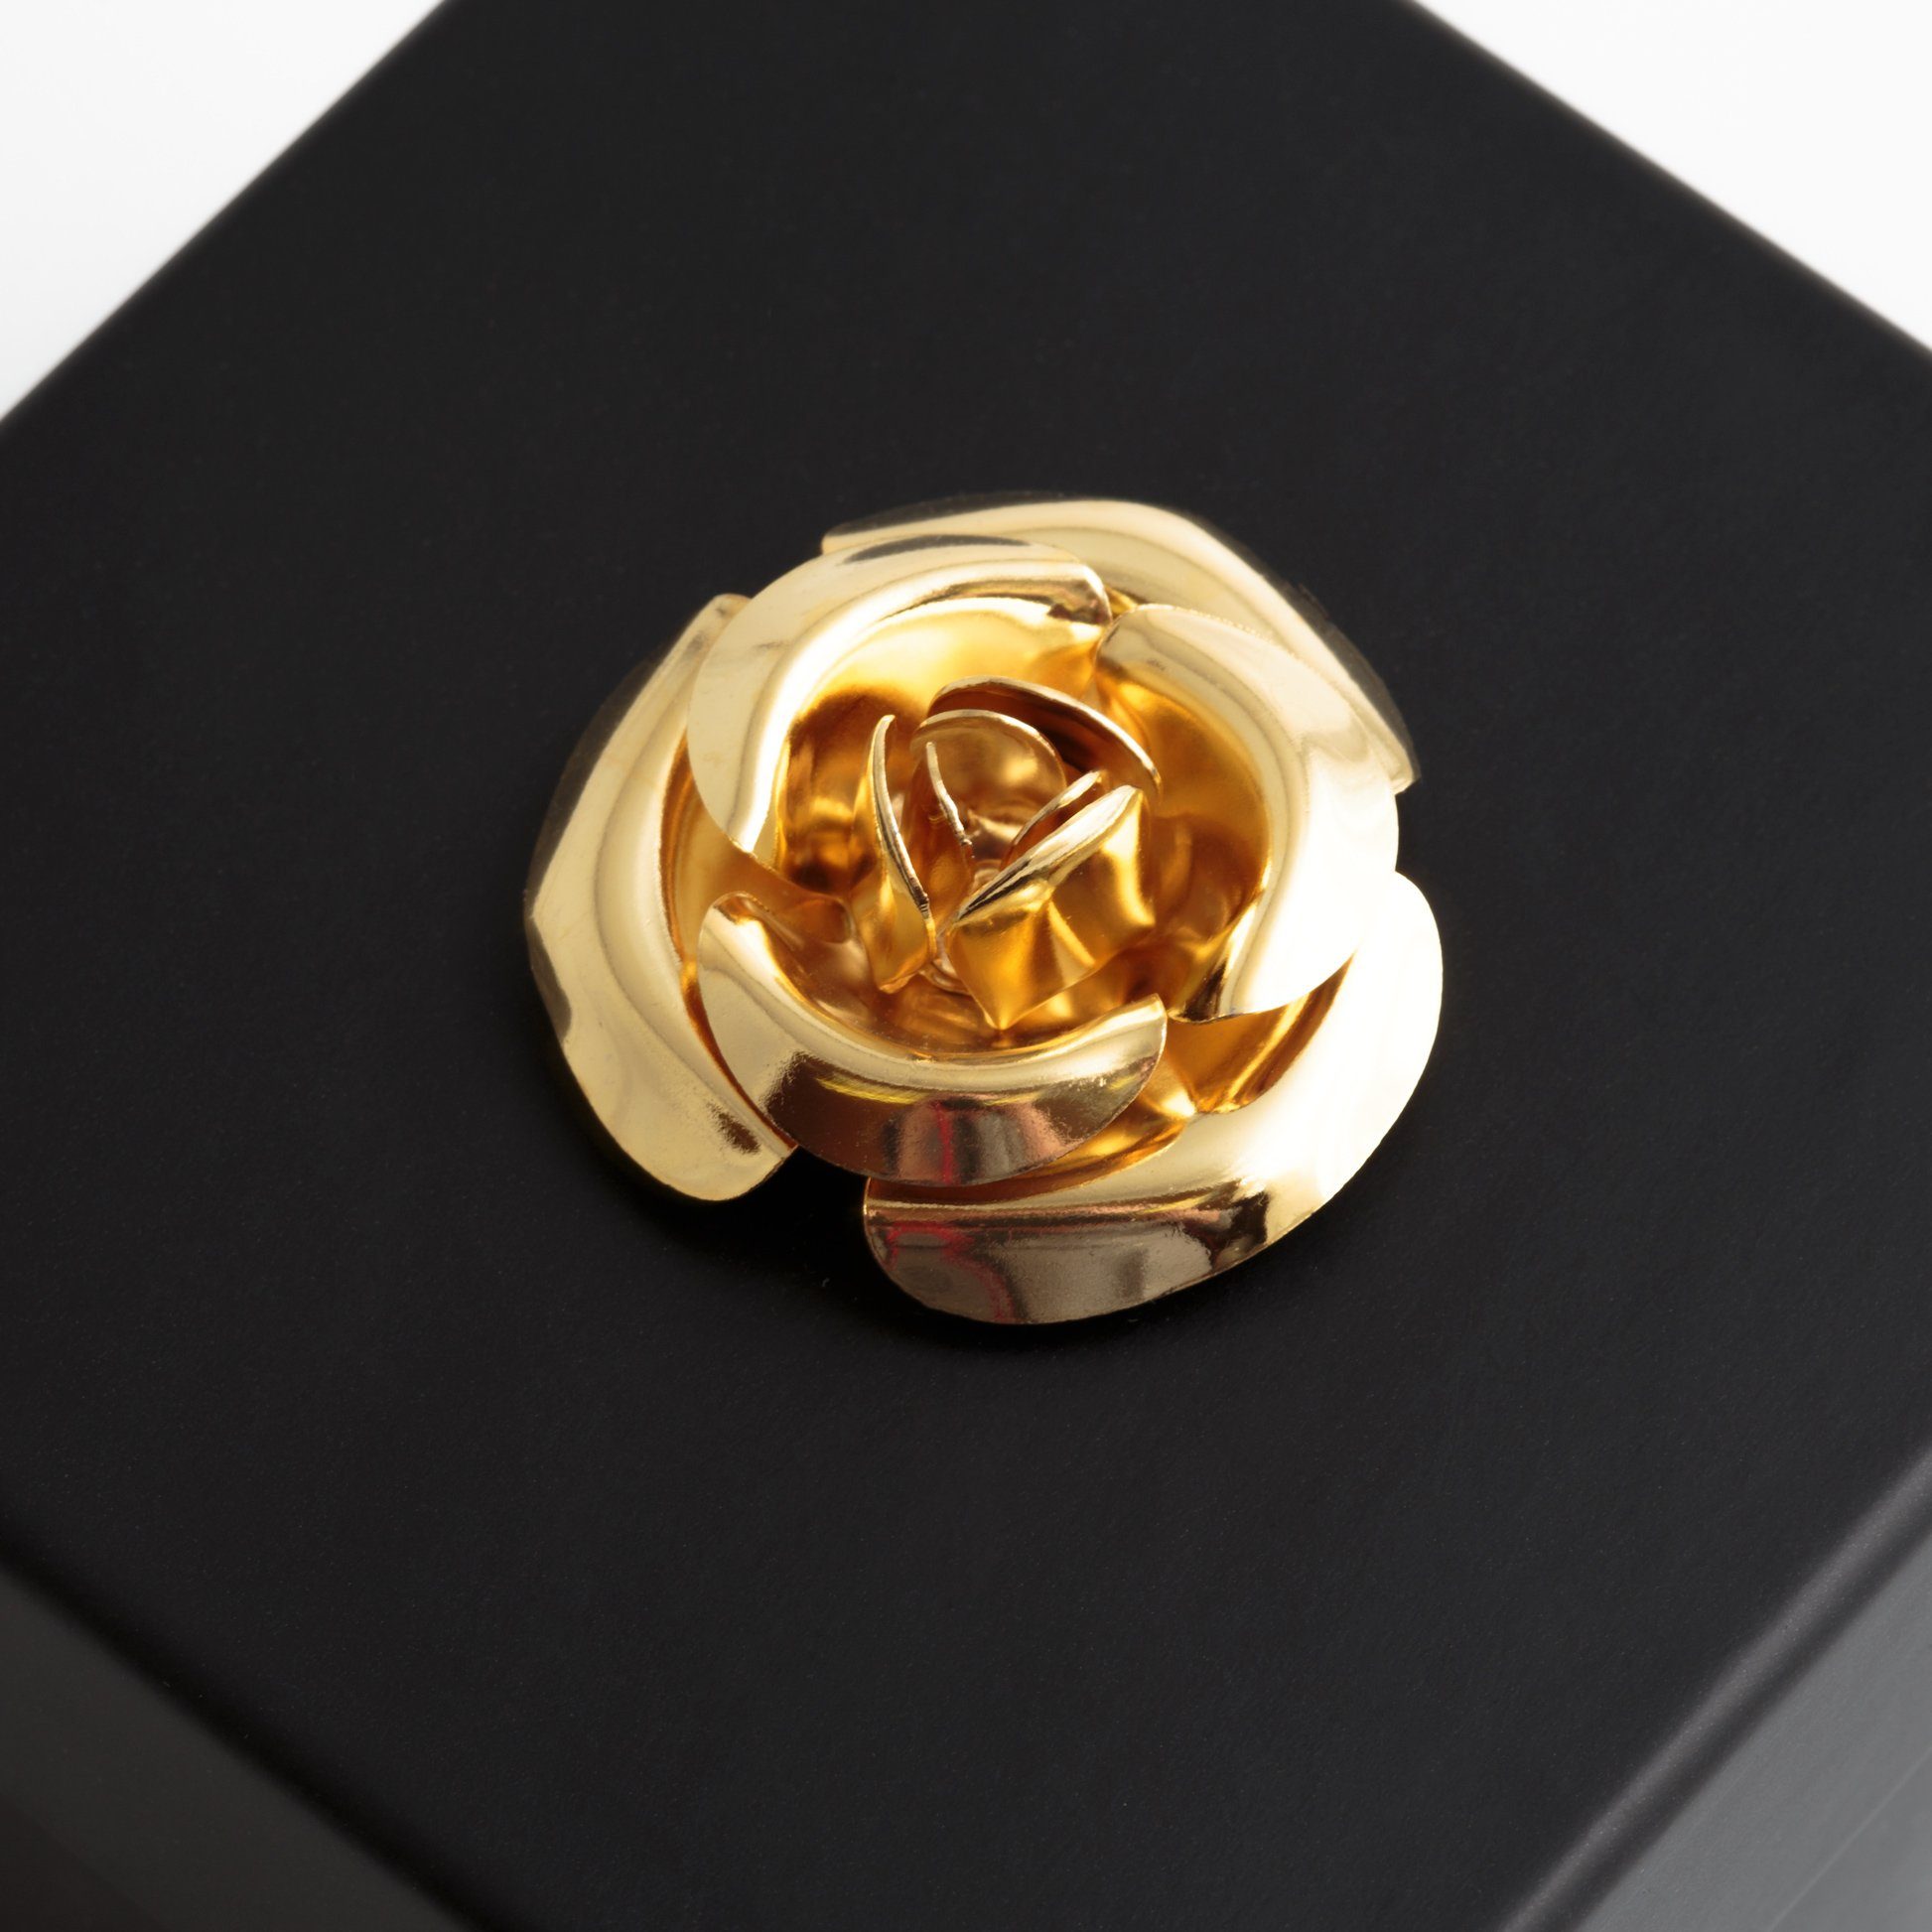 Kunstblume Blumendeckel Rose Rose, Jahre mit SCHULZ Echte Rose 1 Heidelberg, Infinity haltbar 3 Rose 3 Box Höhe 6.5 cm, in Jahre ROSEMARIE haltbar beige bis zu